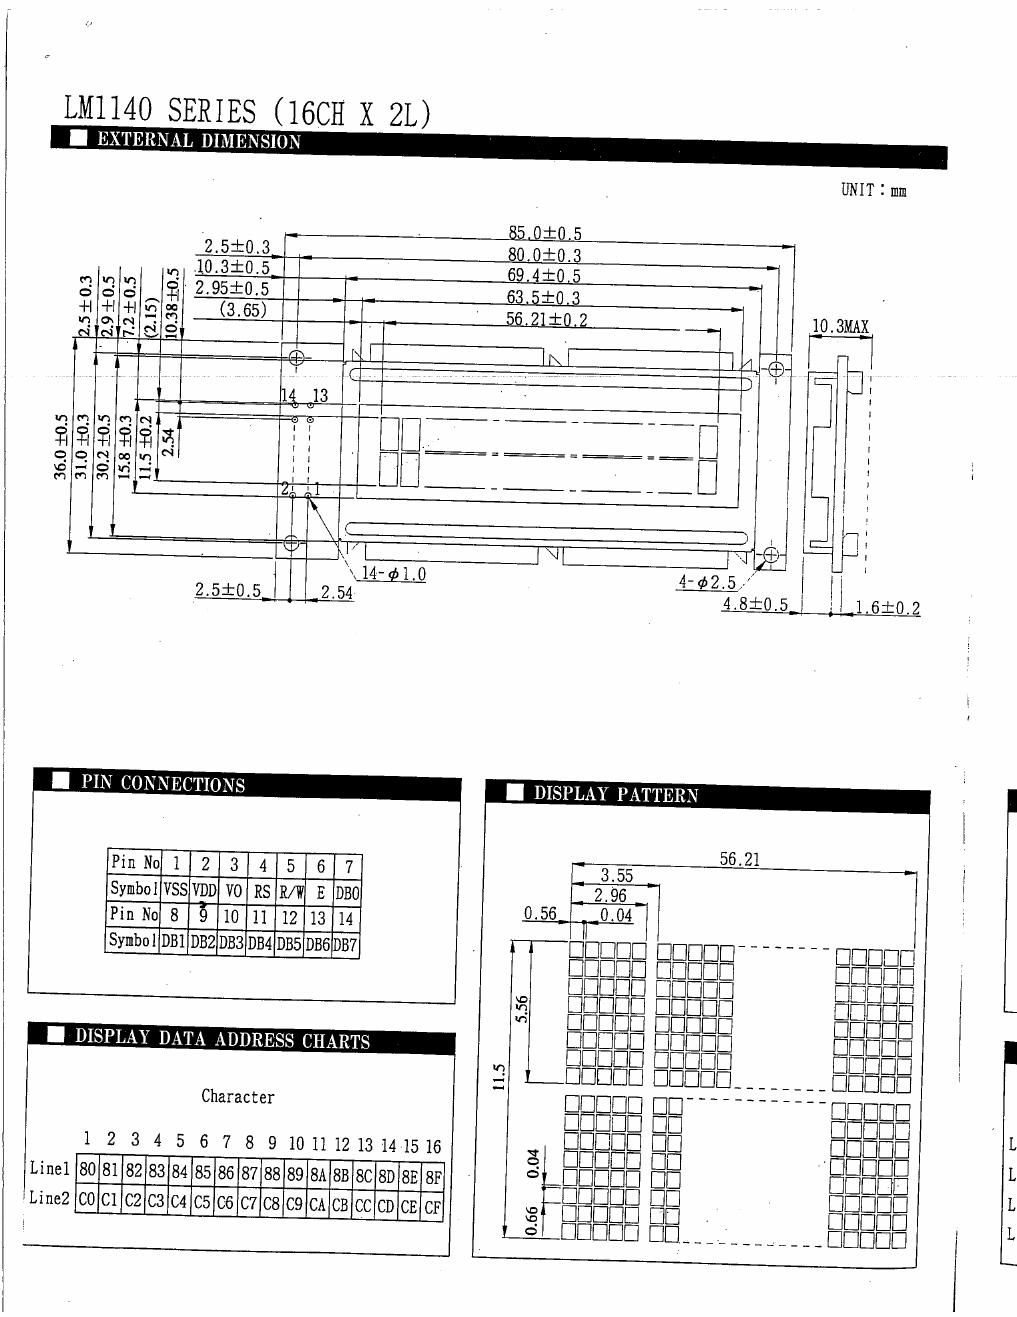 digitech valve fx lm1140 series lcd data sheet